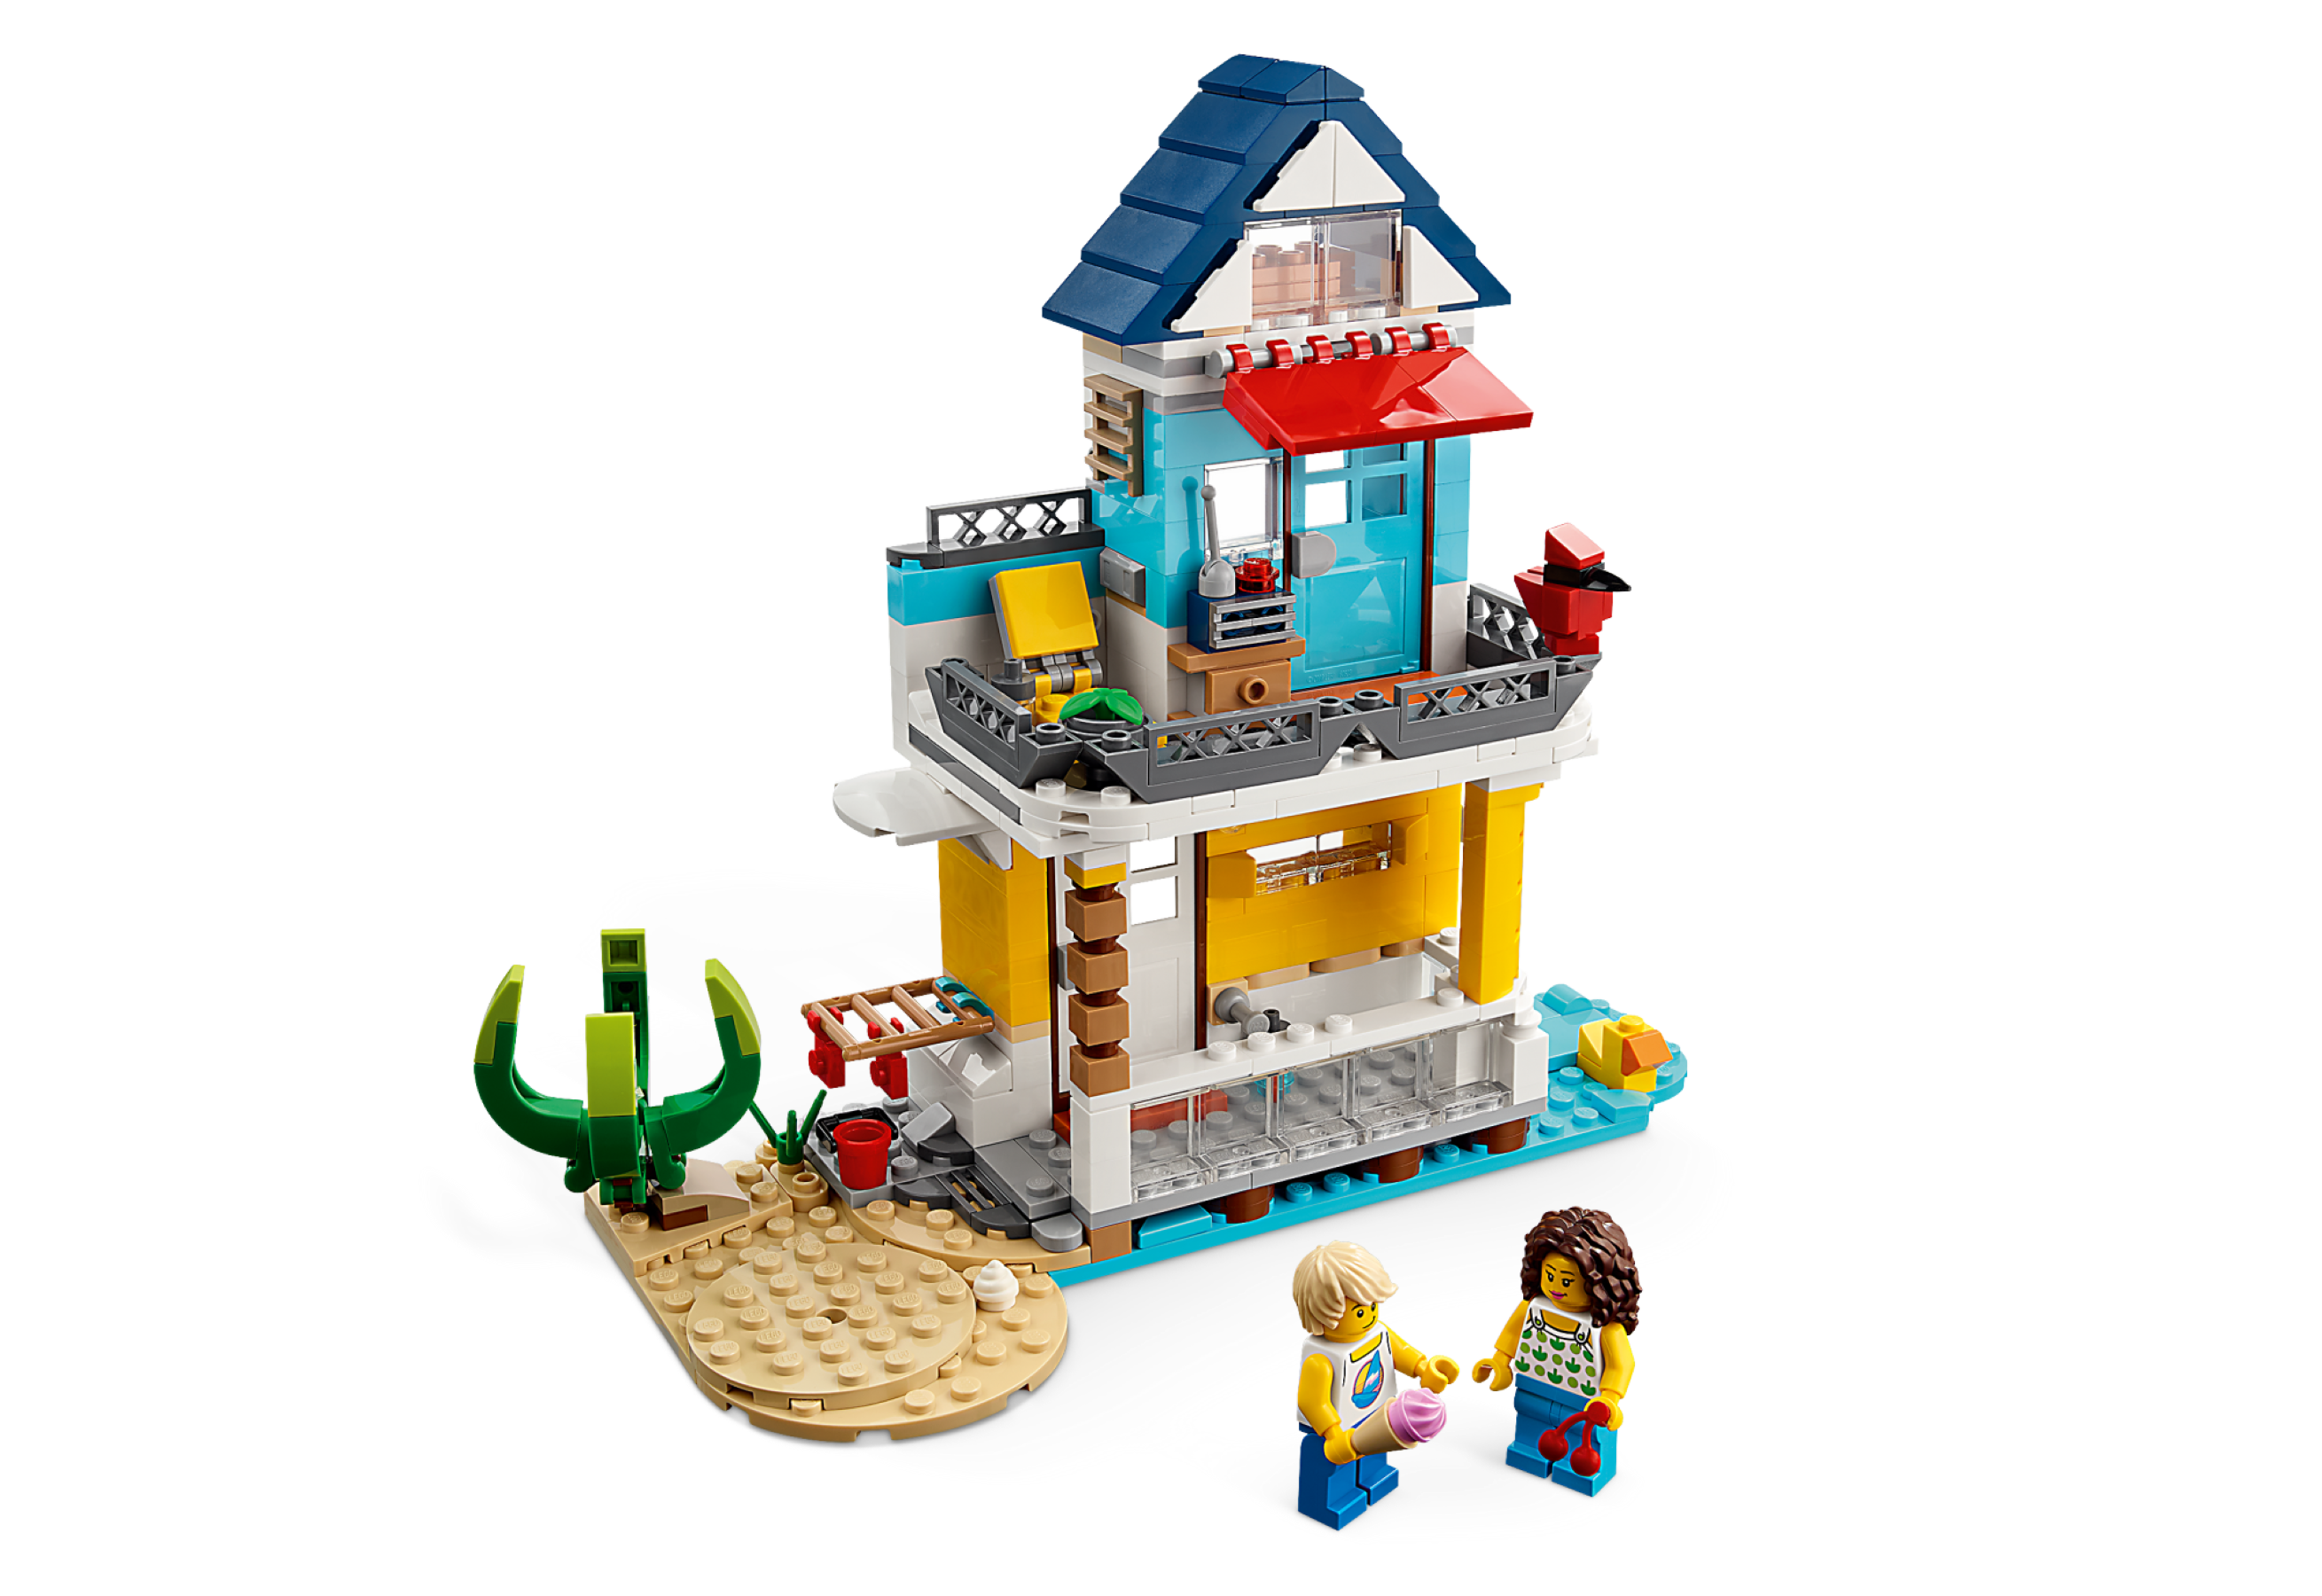 LEGO Casa accogliente